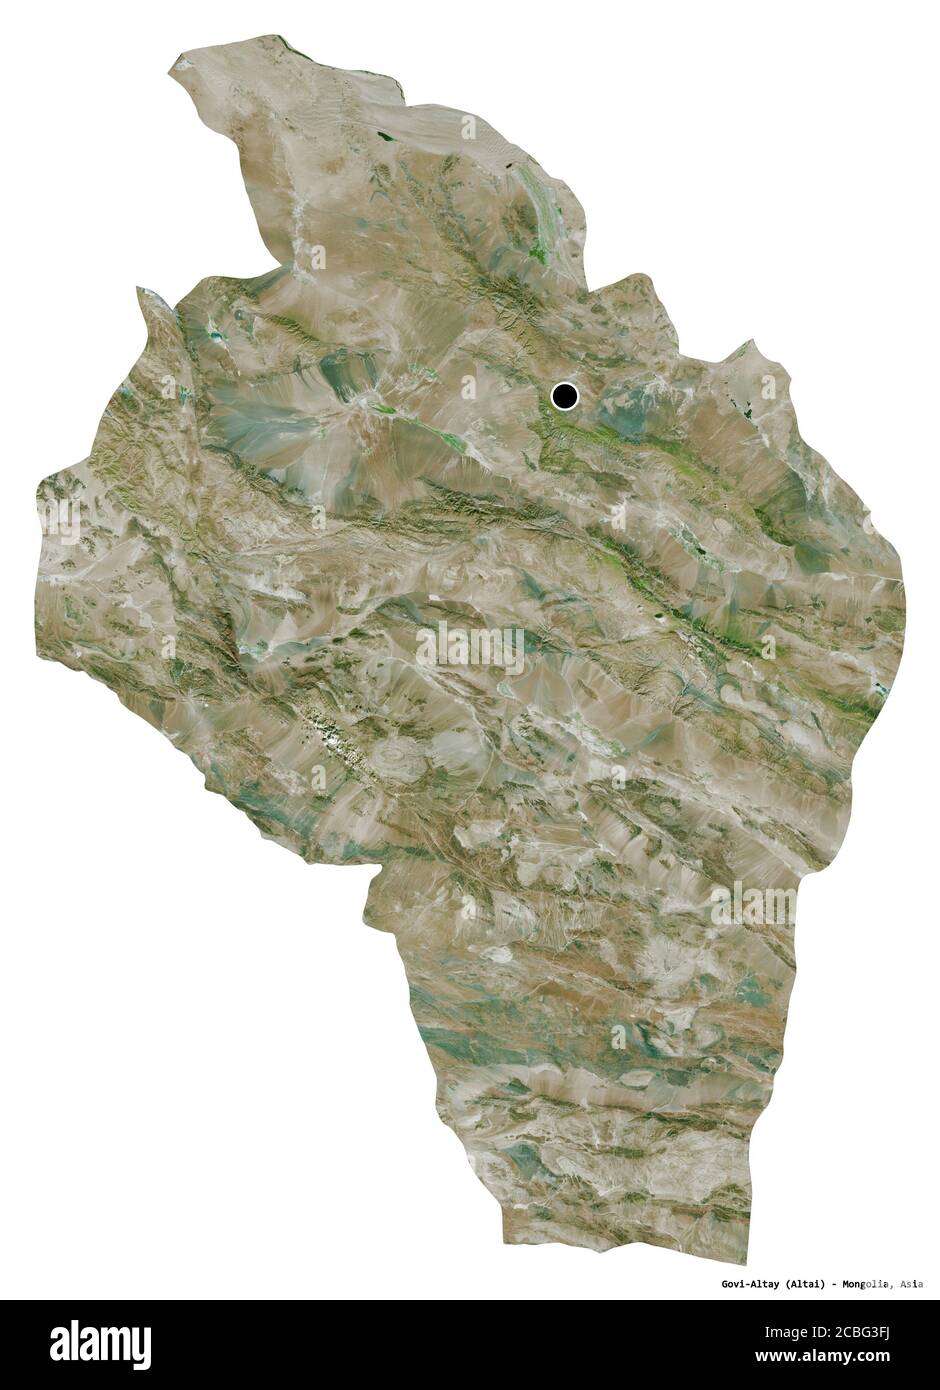 Forme de Govi-Altay, province de Mongolie, avec sa capitale isolée sur fond blanc. Imagerie satellite. Rendu 3D Banque D'Images